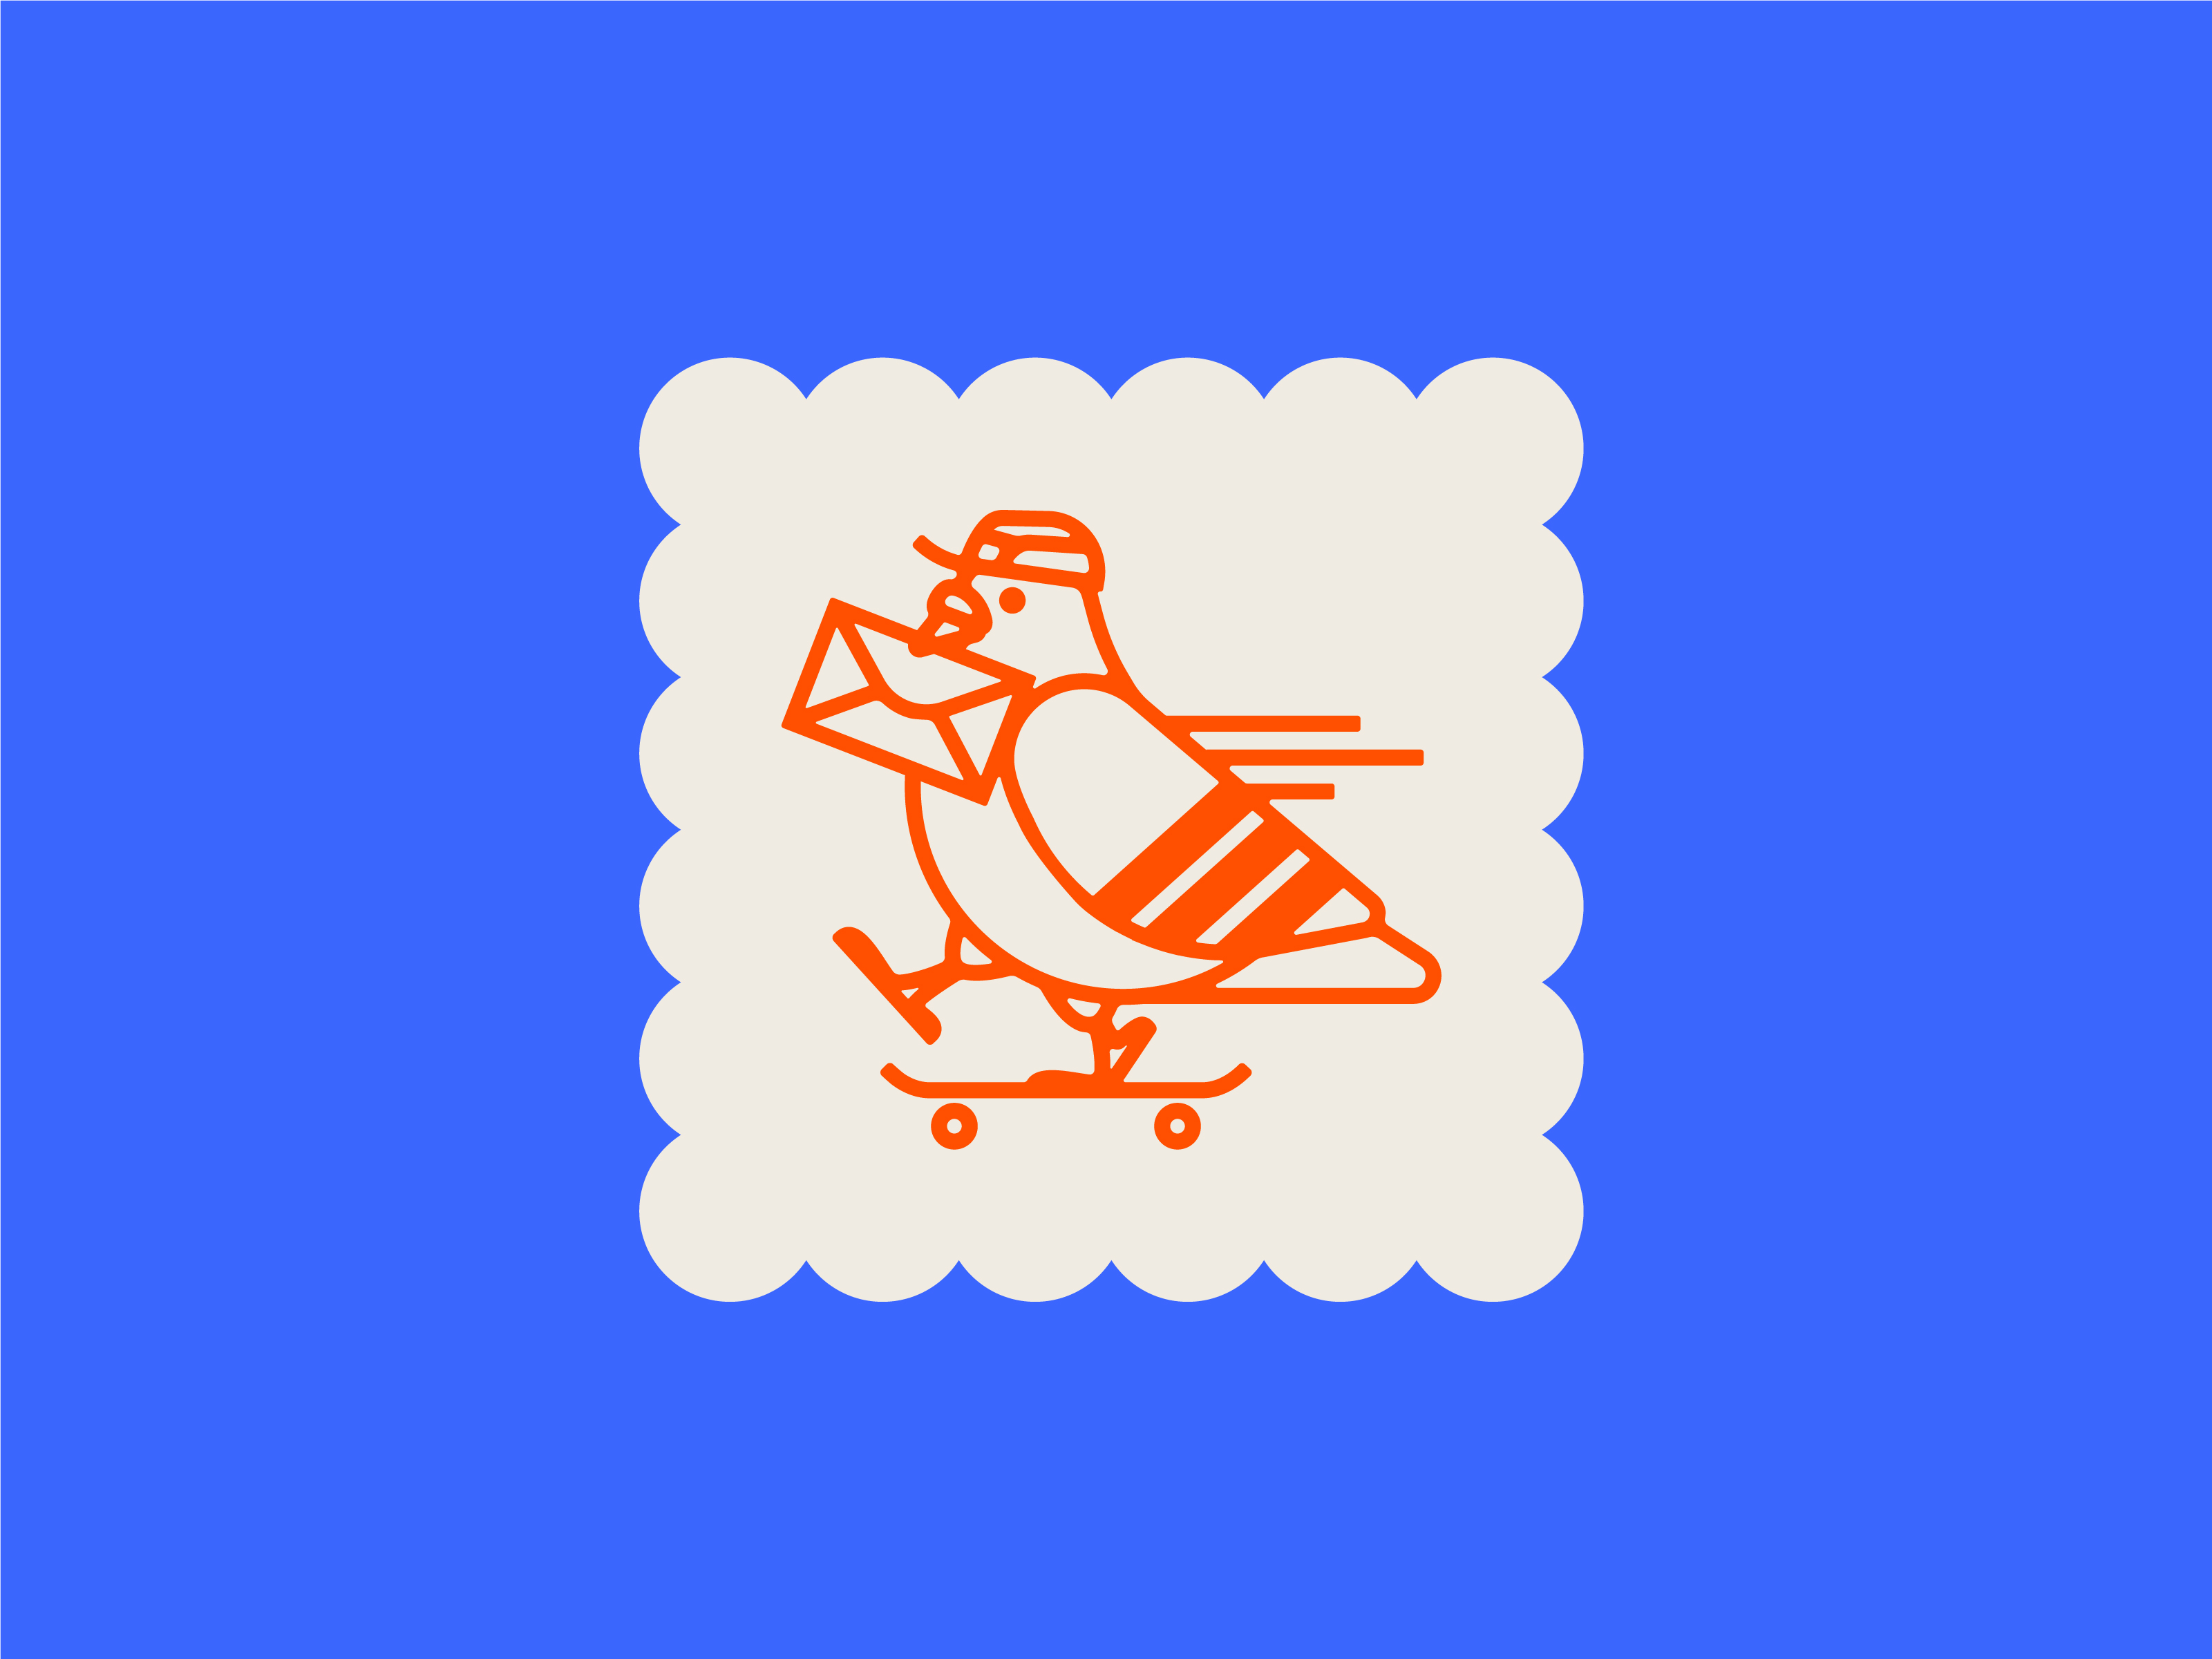 Trust Design Shop Postal Pigeon carrier courier design fort worth icon illustration illustrator mail mailman mark pigeon postal stamp tds trust trust design shop